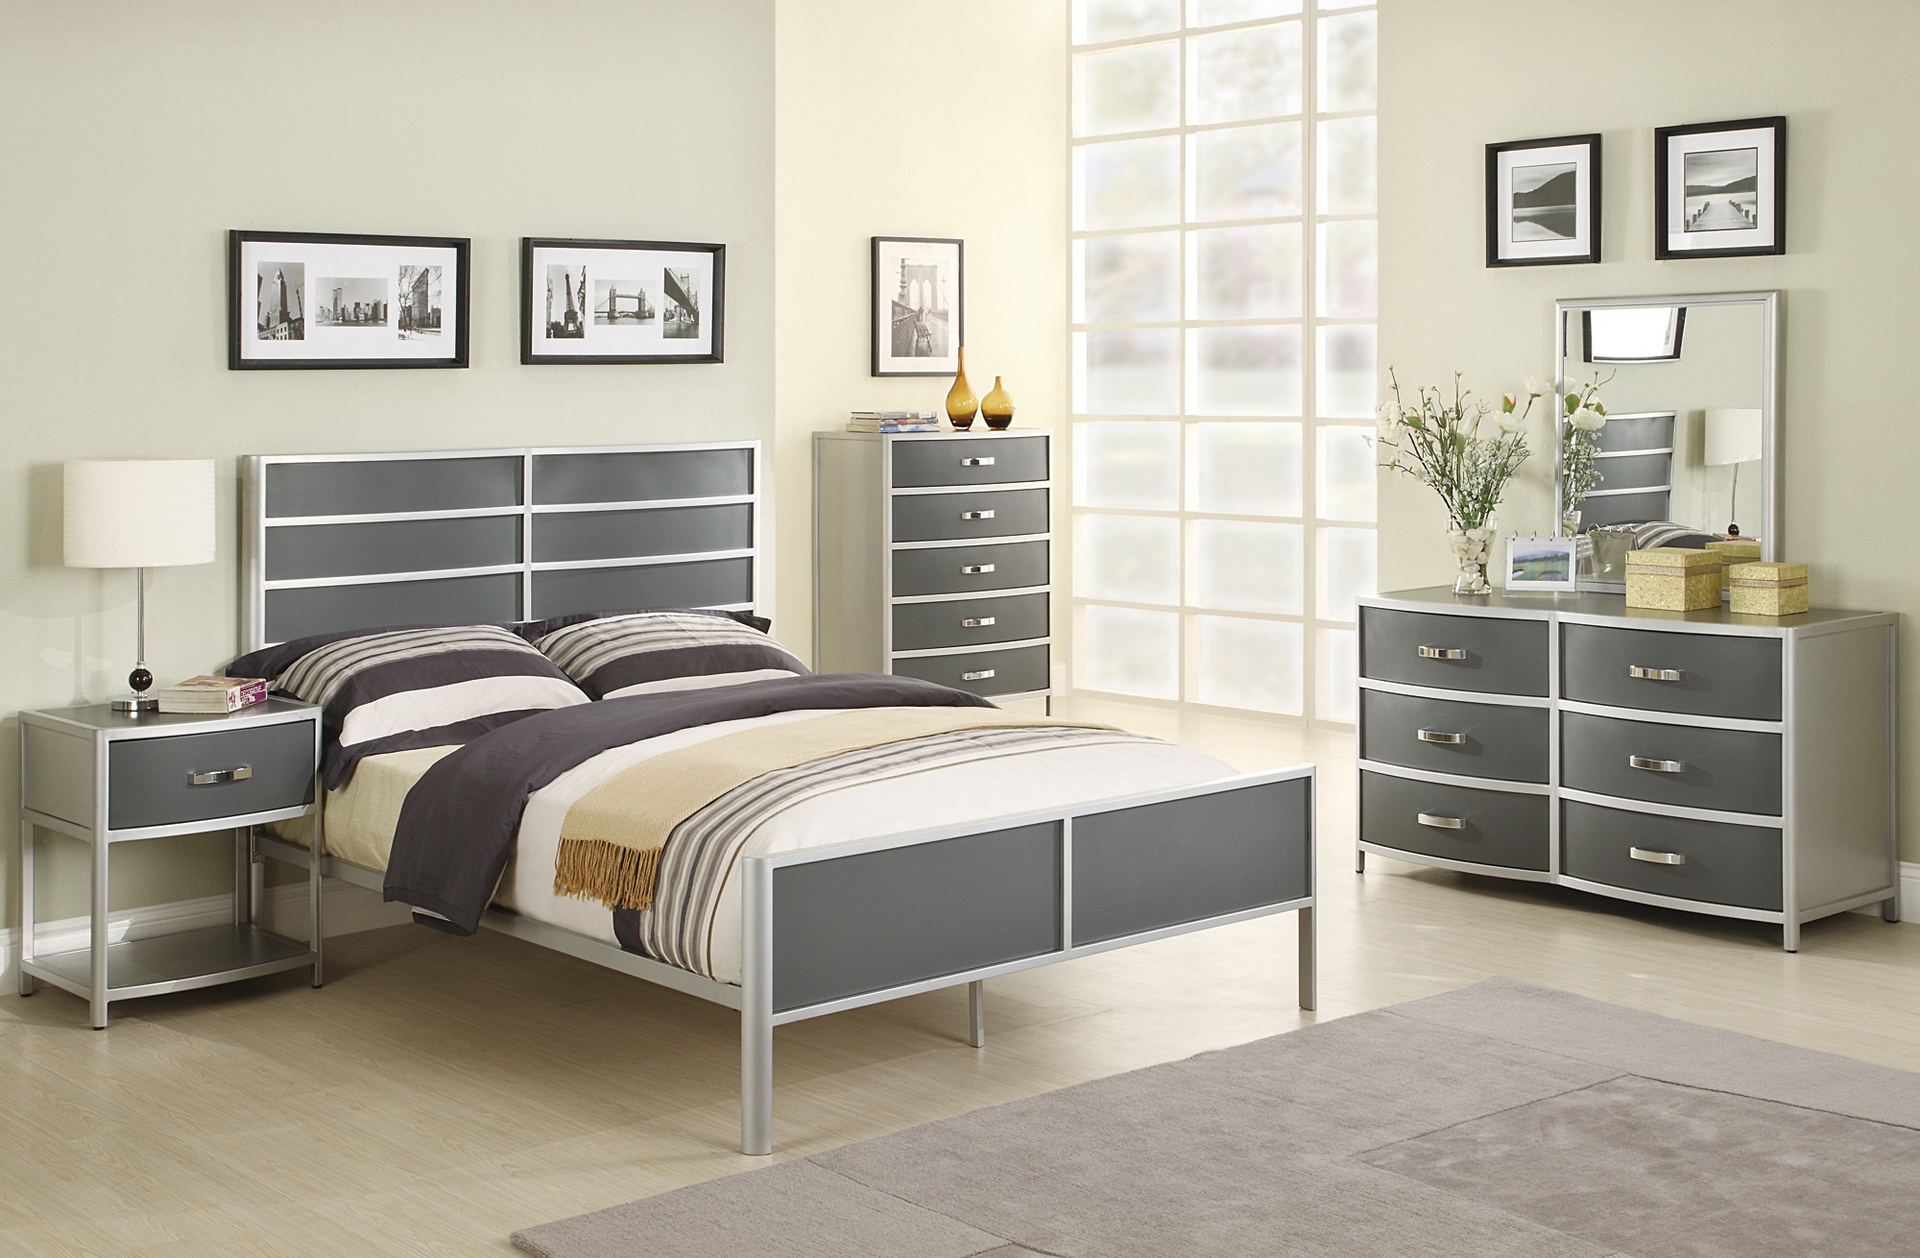 silver bedroom furniture gumtree